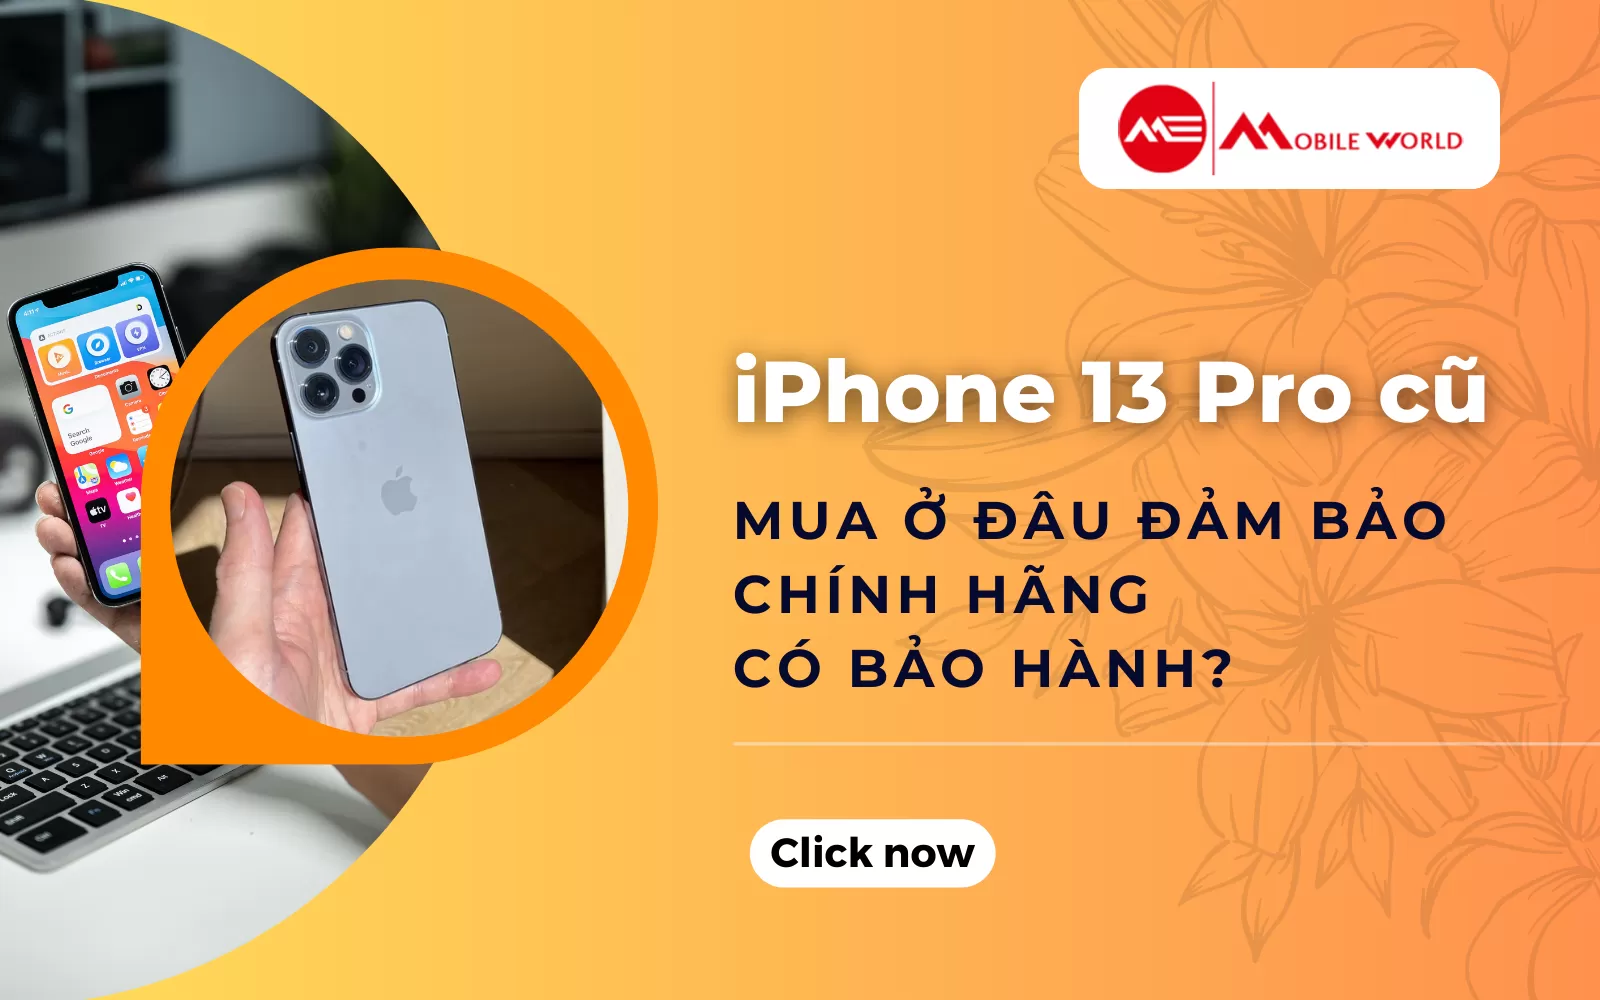 iPhone 13 Pro cũ mua ở đâu đảm bảo chính hãng có bảo hành?